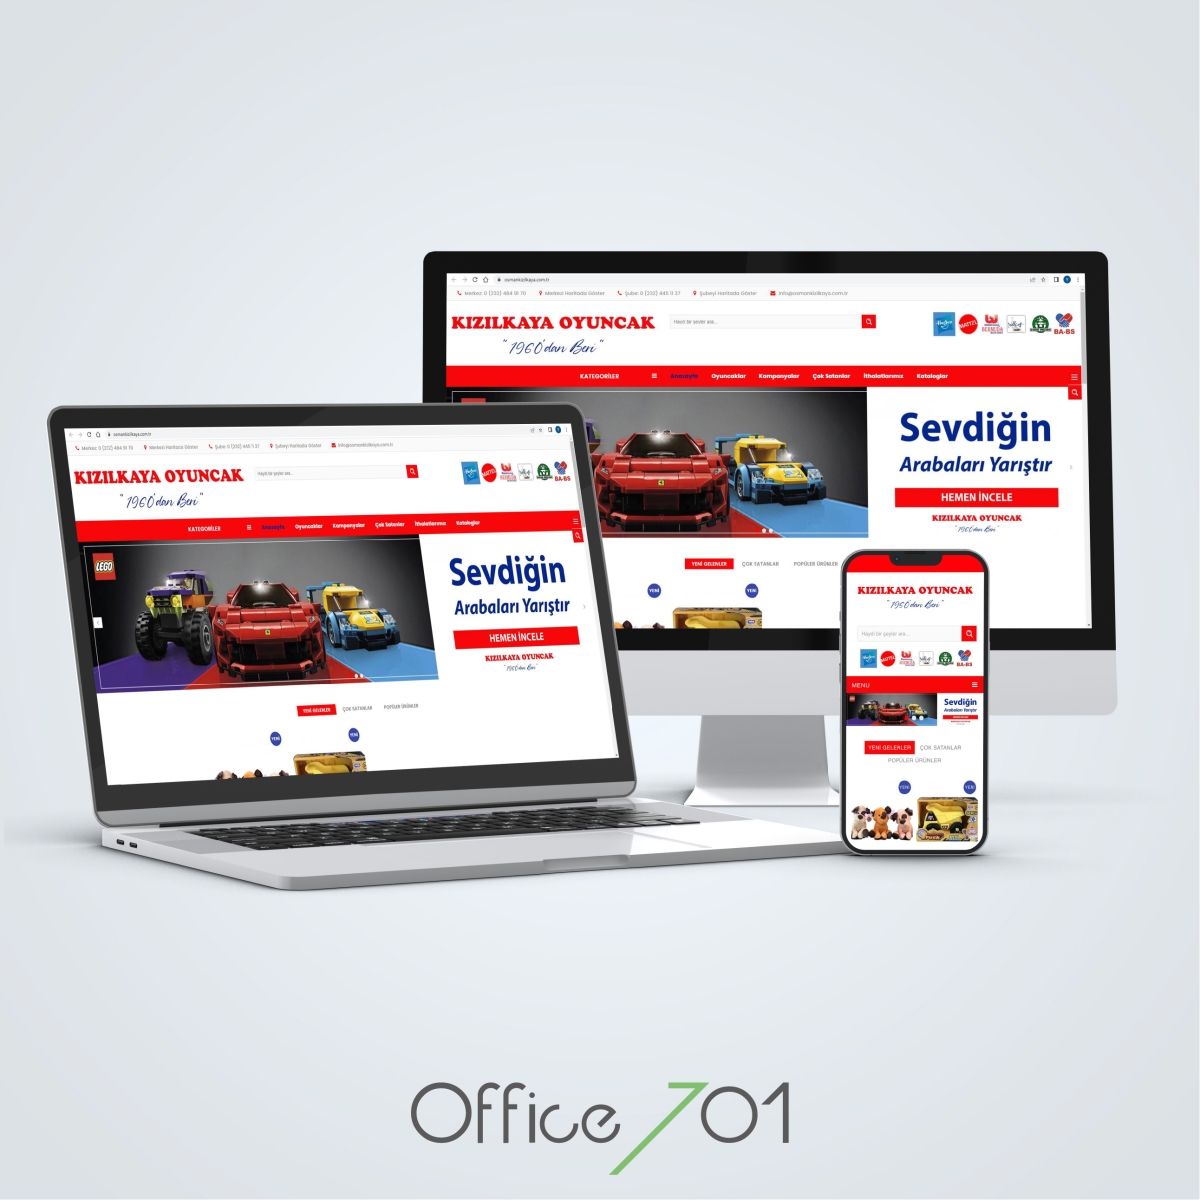 Office701 | Kızılkaya Oyuncak Web Sitesi